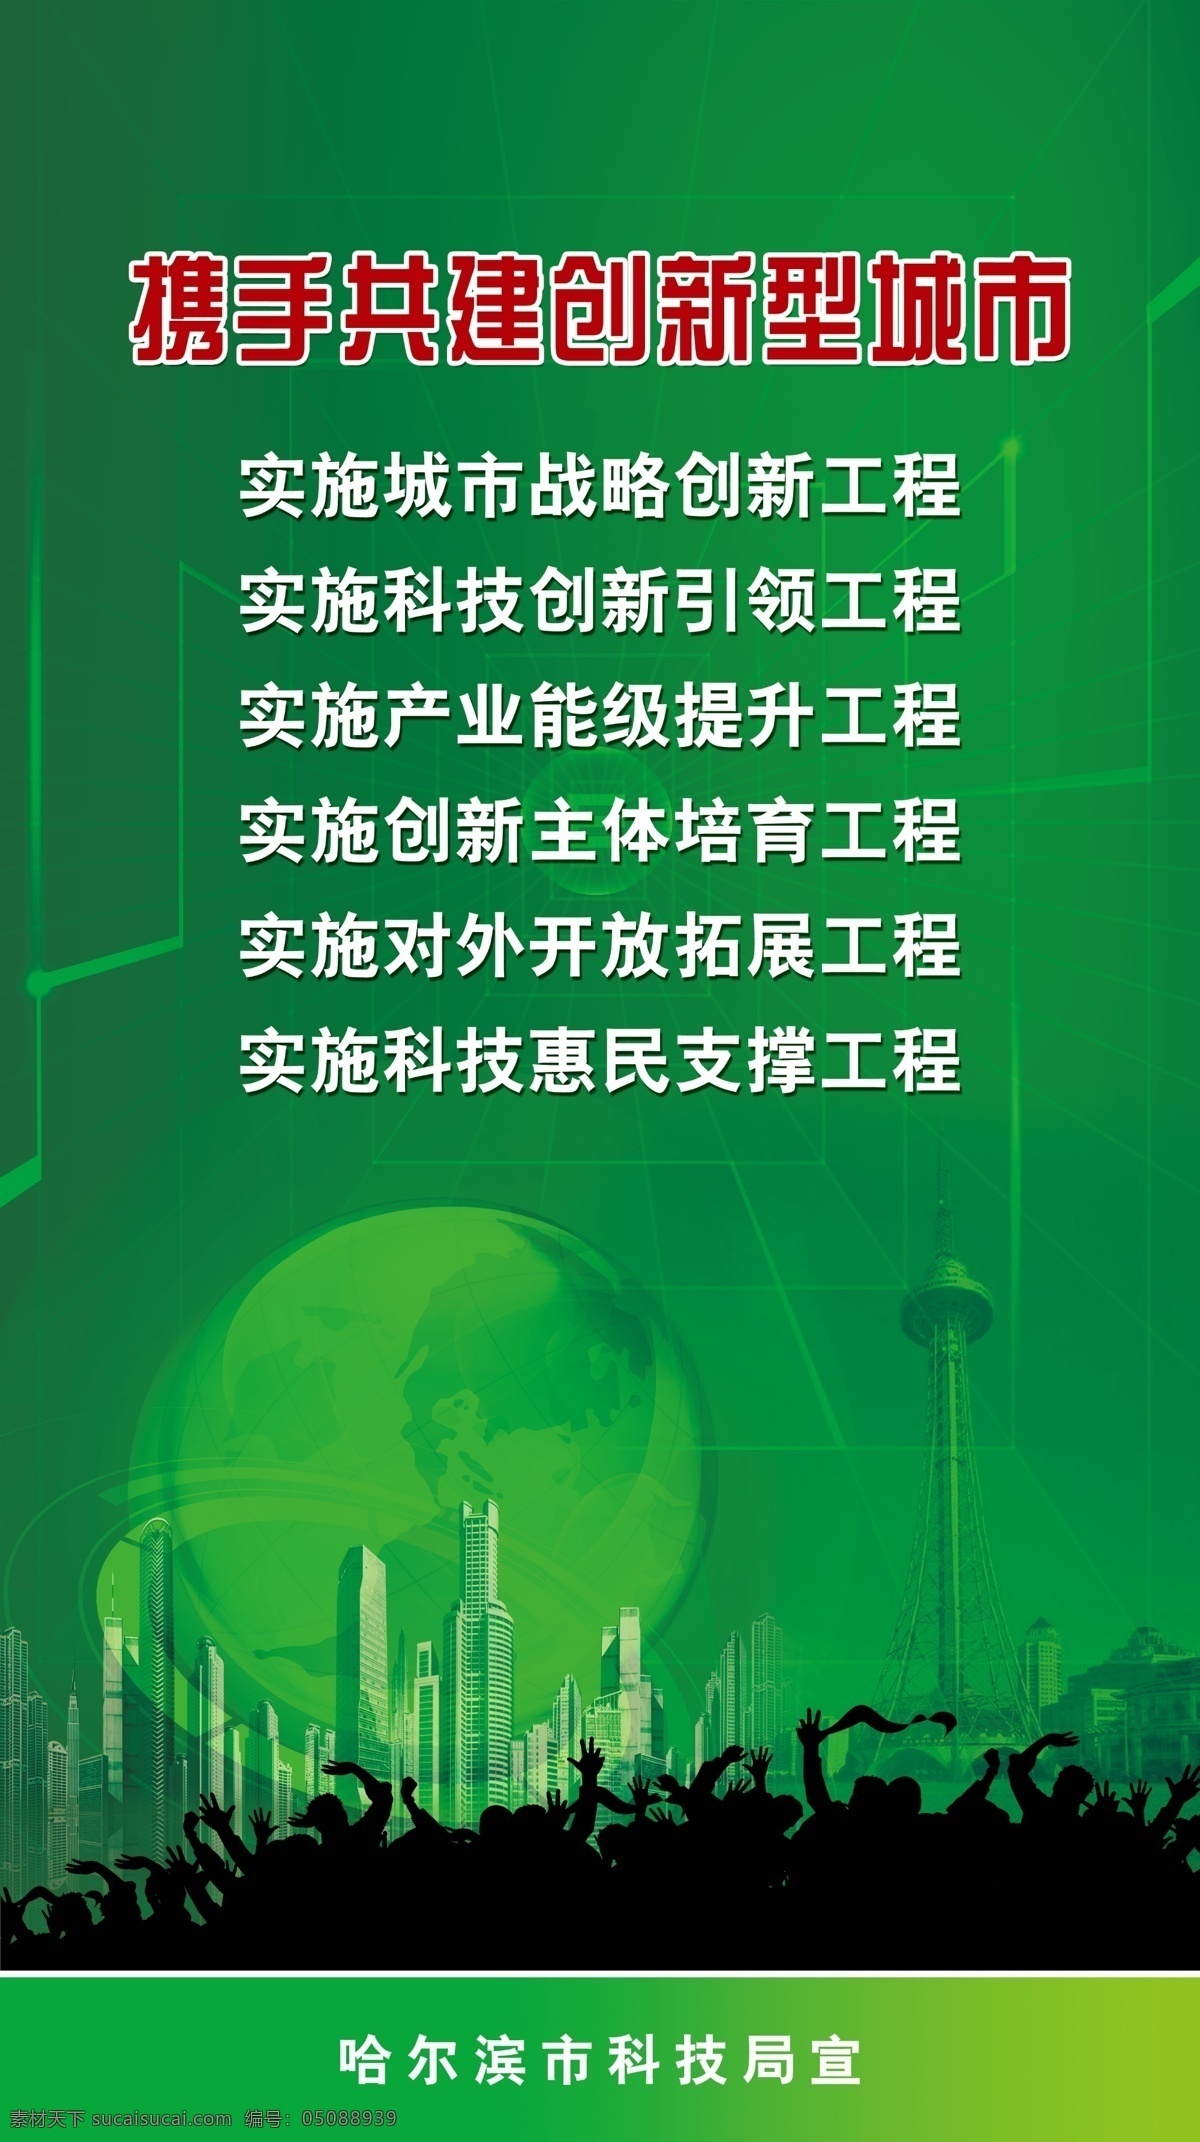 背景板 地球 工程展板 工程 展板 模板下载 广告设计模板 科技 绿背景 宣传展板 展板模板 龙塔 竖 携手 共建 创新型 城市 源文件 企业文化展板